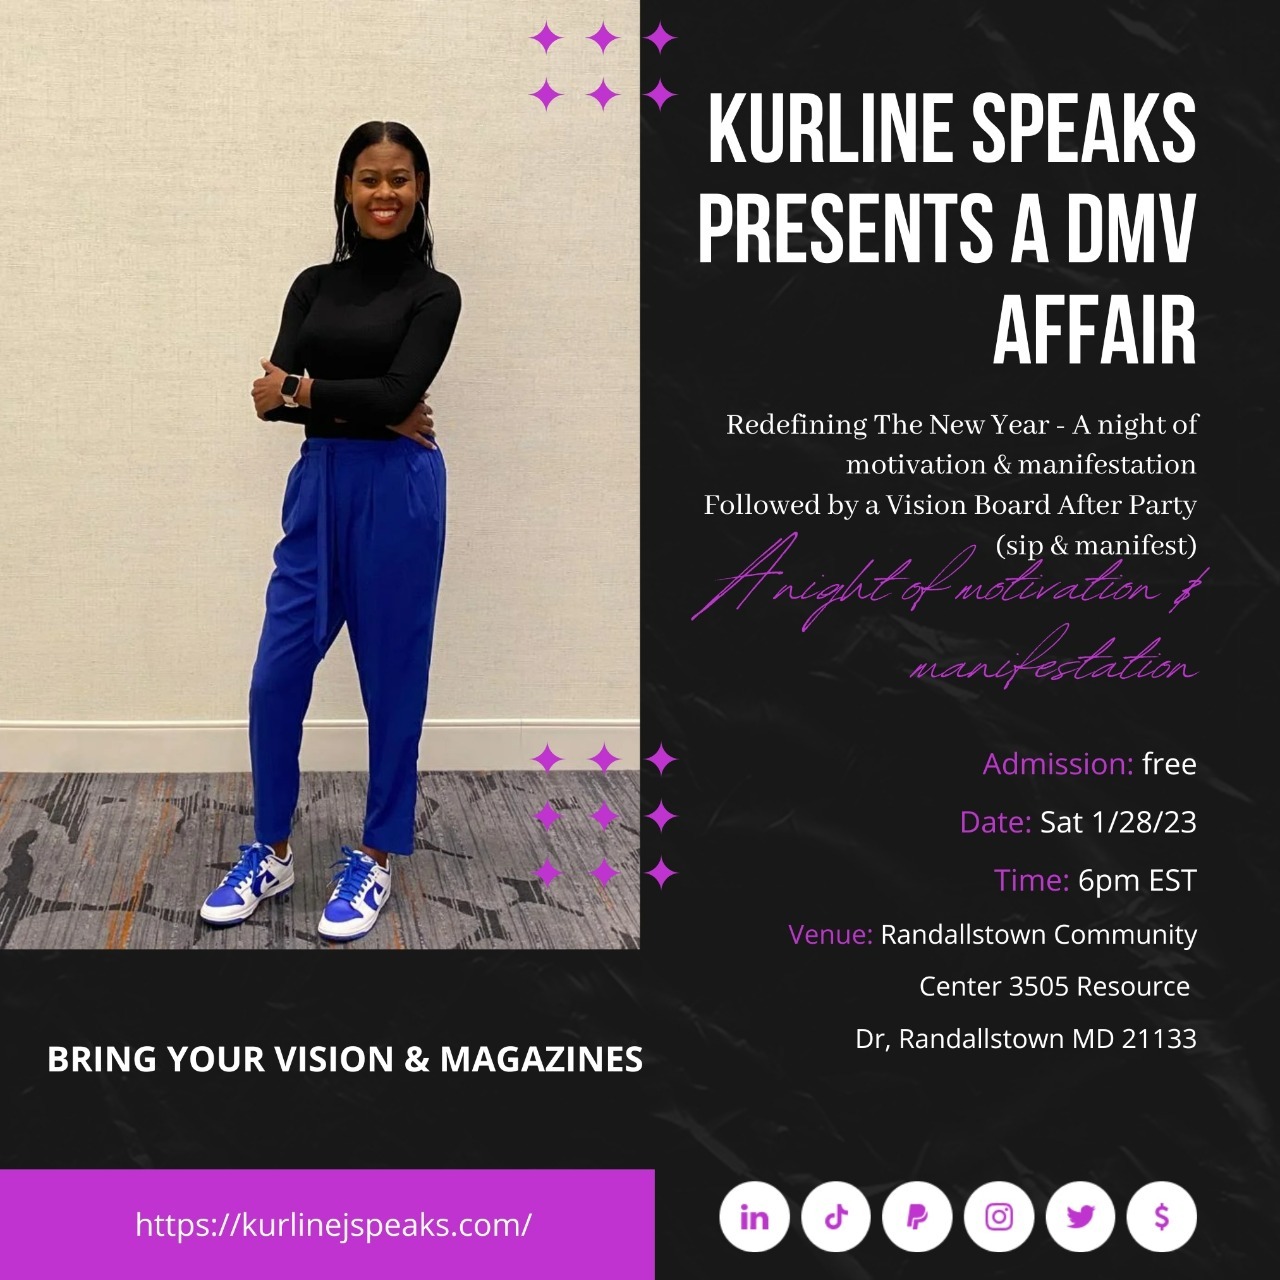 Kurline speaks event